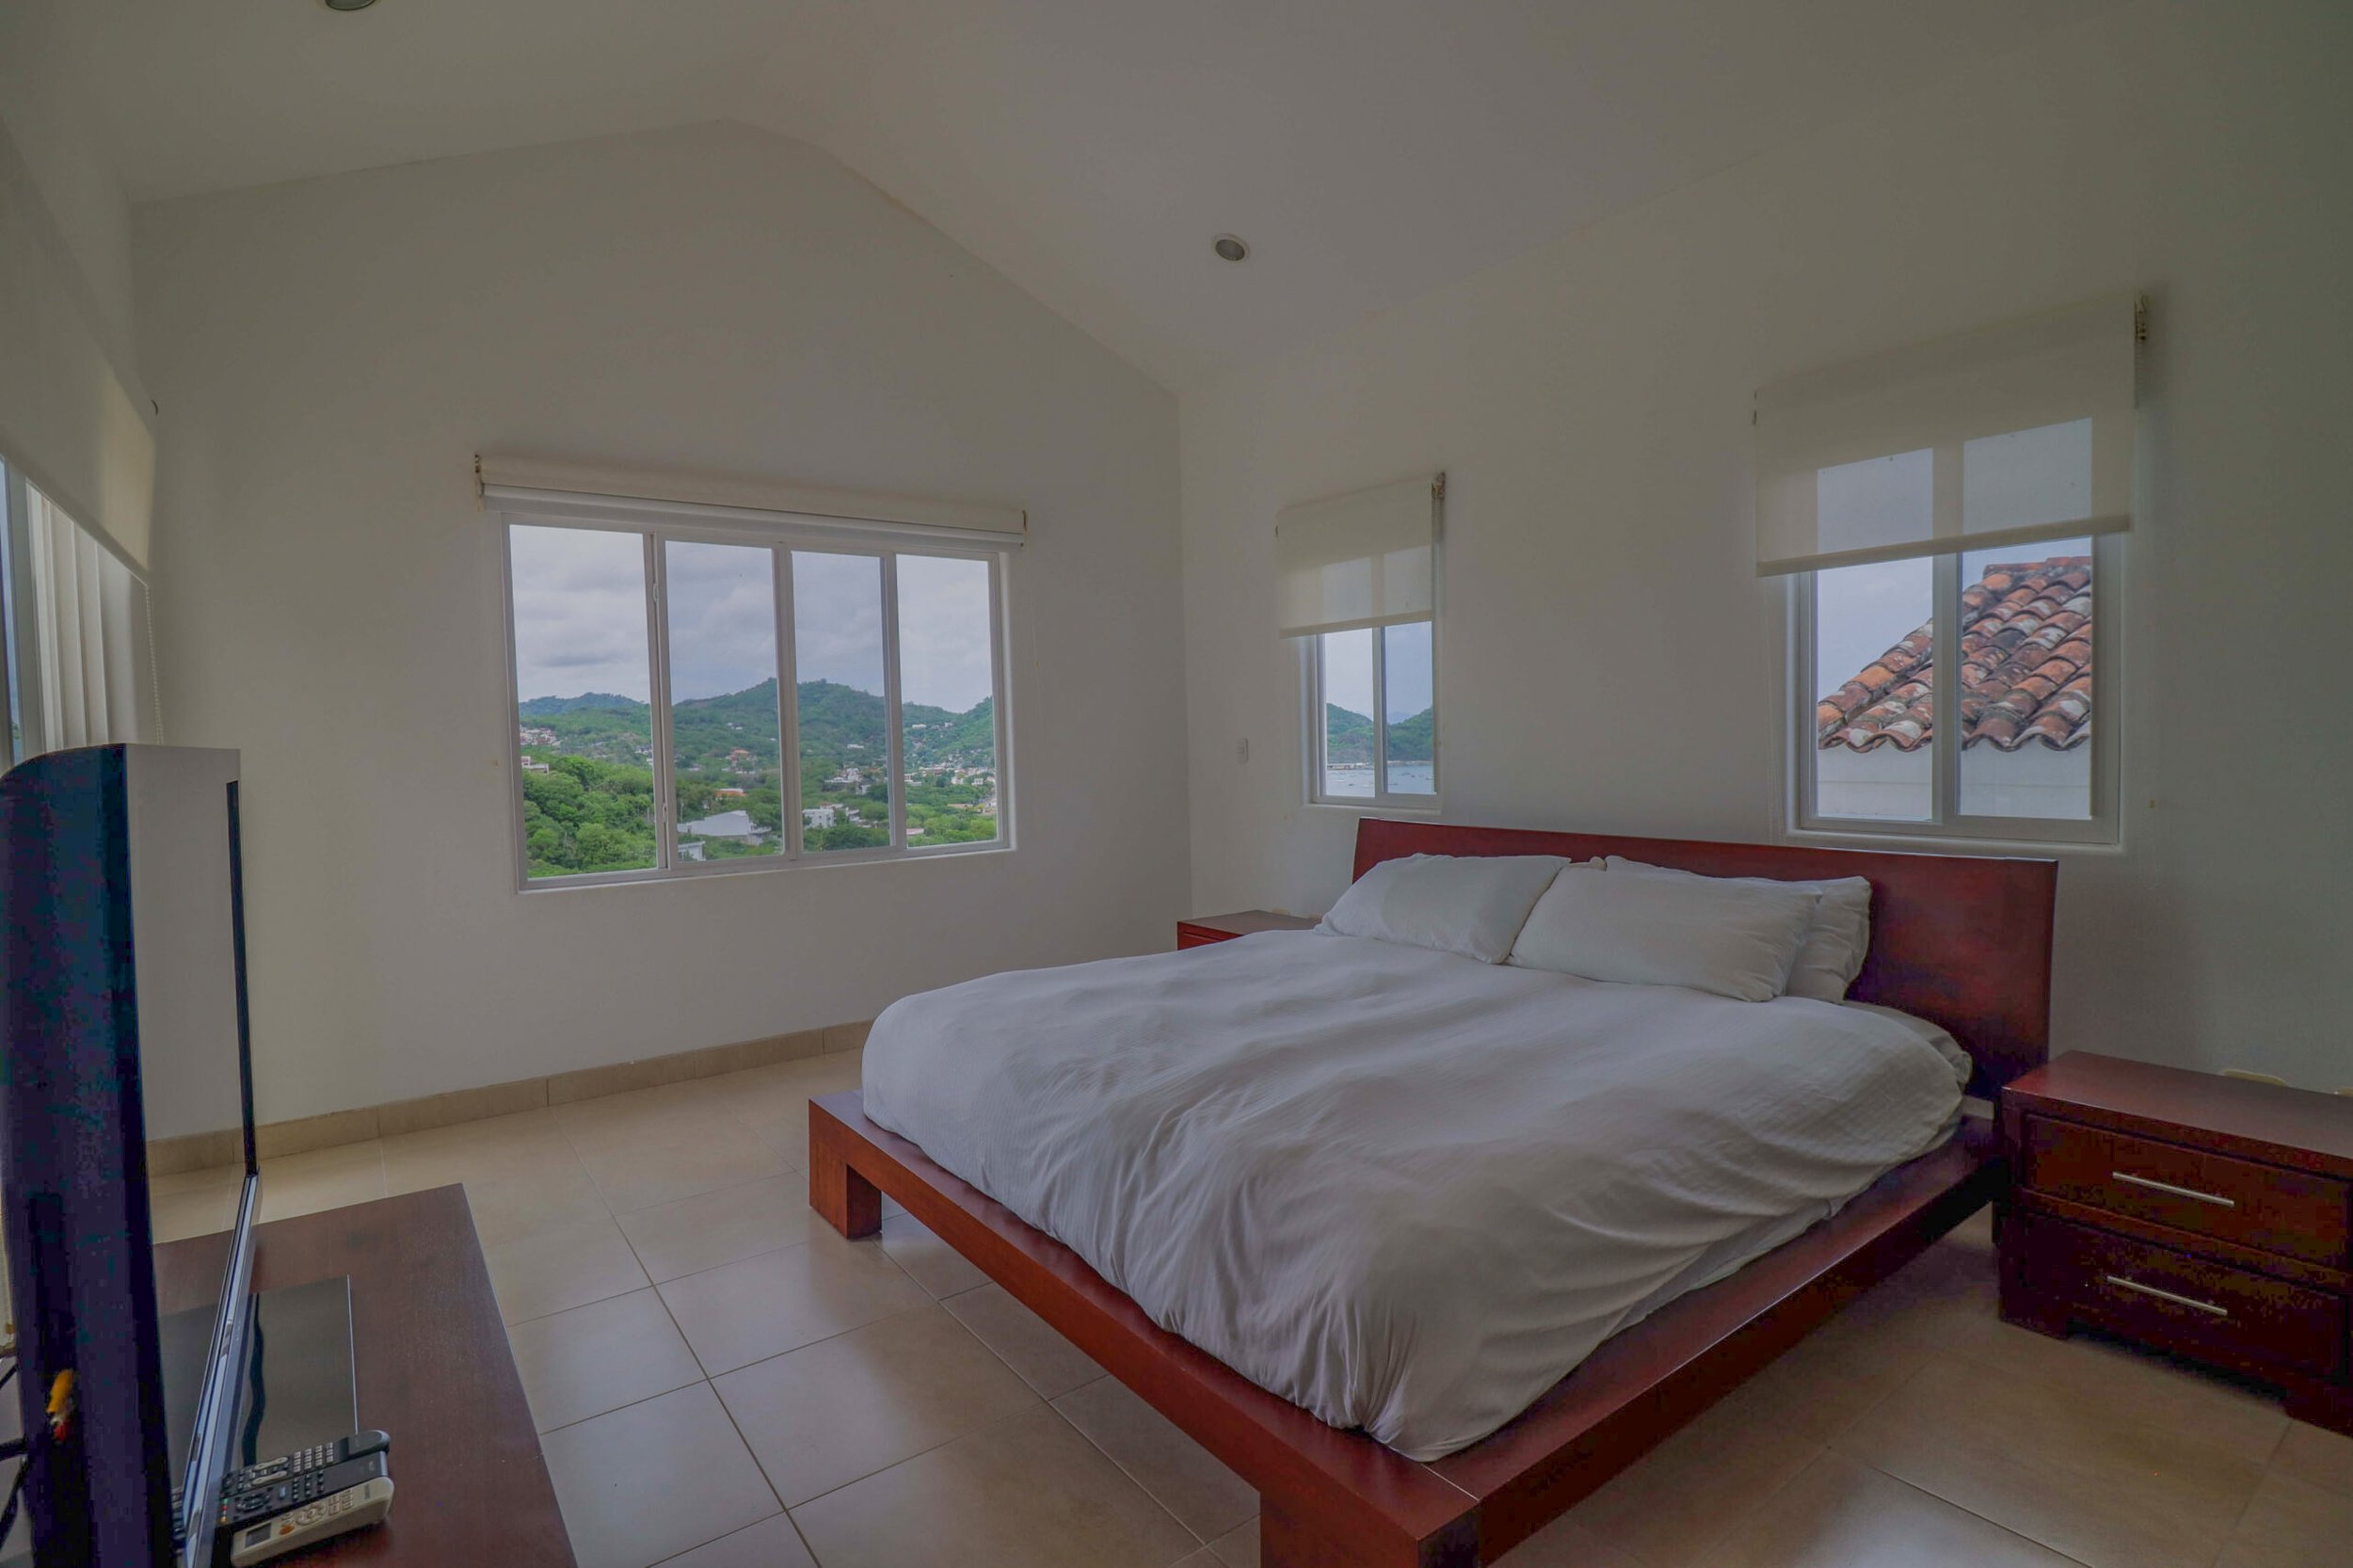 Luxury Home House Property For Sale Sale Juan Del Sur Nicaragua 8.JPEG